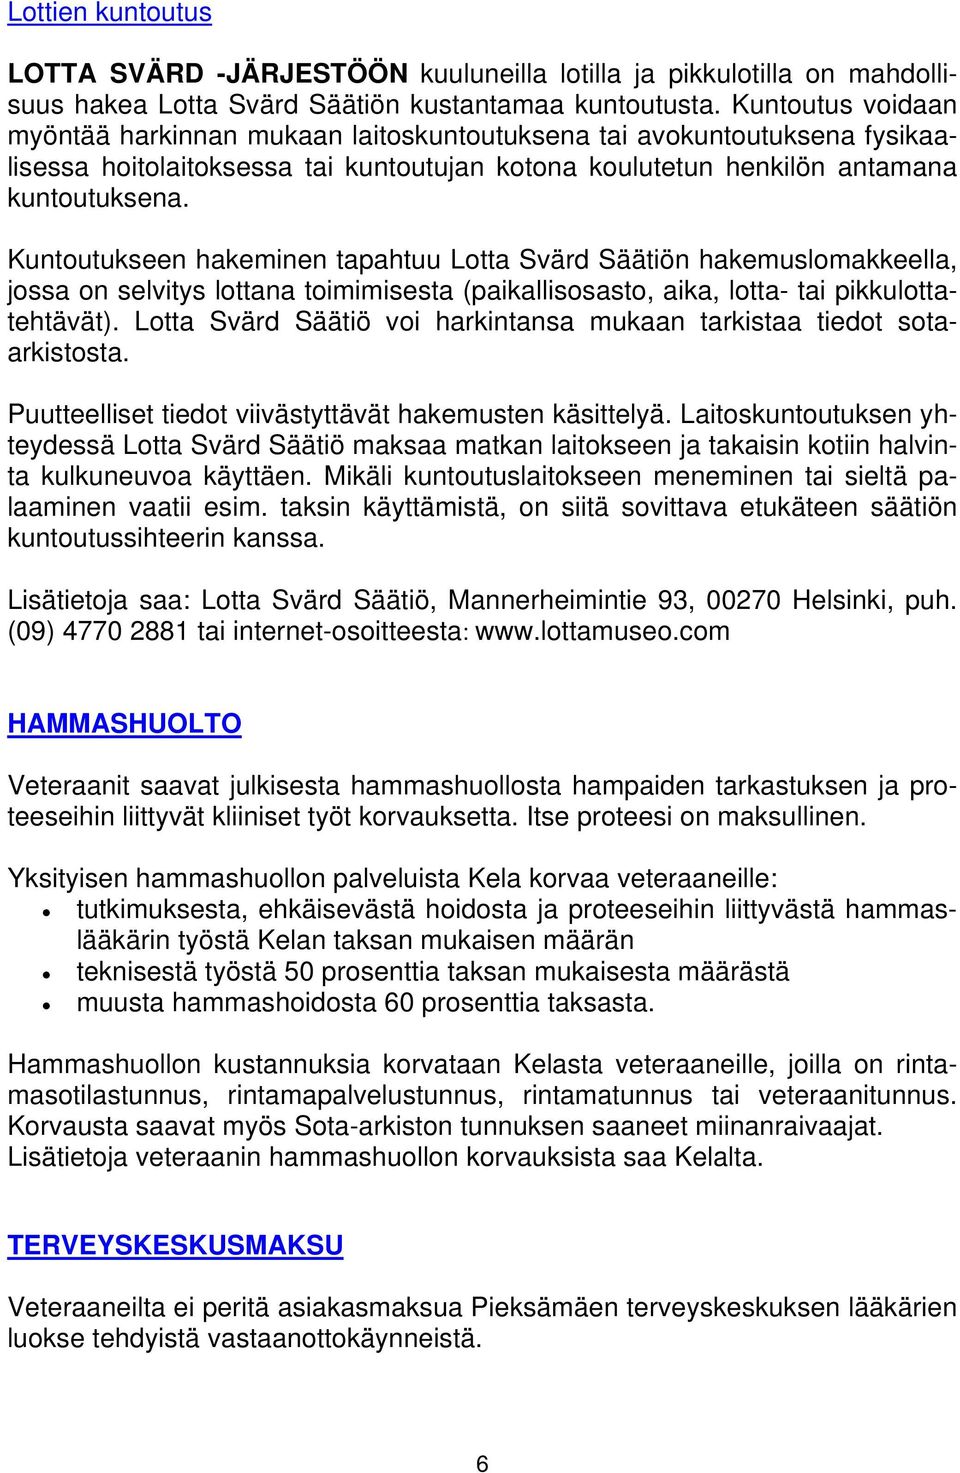 Kuntoutukseen hakeminen tapahtuu Lotta Svärd Säätiön hakemuslomakkeella, jossa on selvitys lottana toimimisesta (paikallisosasto, aika, lotta- tai pikkulottatehtävät).